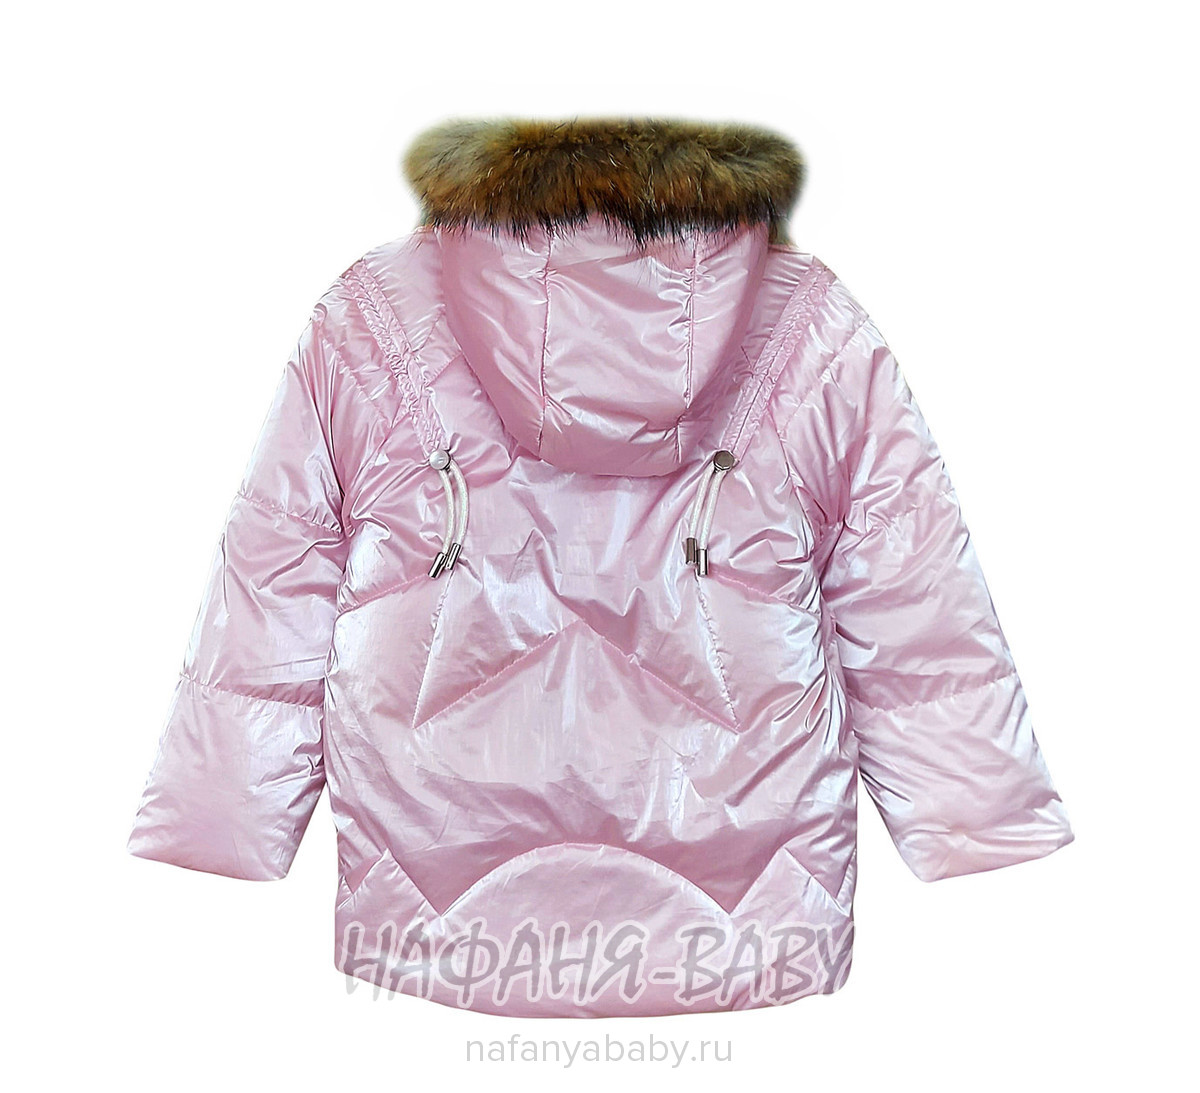 Зимний костюм DELFIN FREE арт: 2281, 1-4 года, 5-9 лет, цвет розовый, оптом Китай (Пекин)